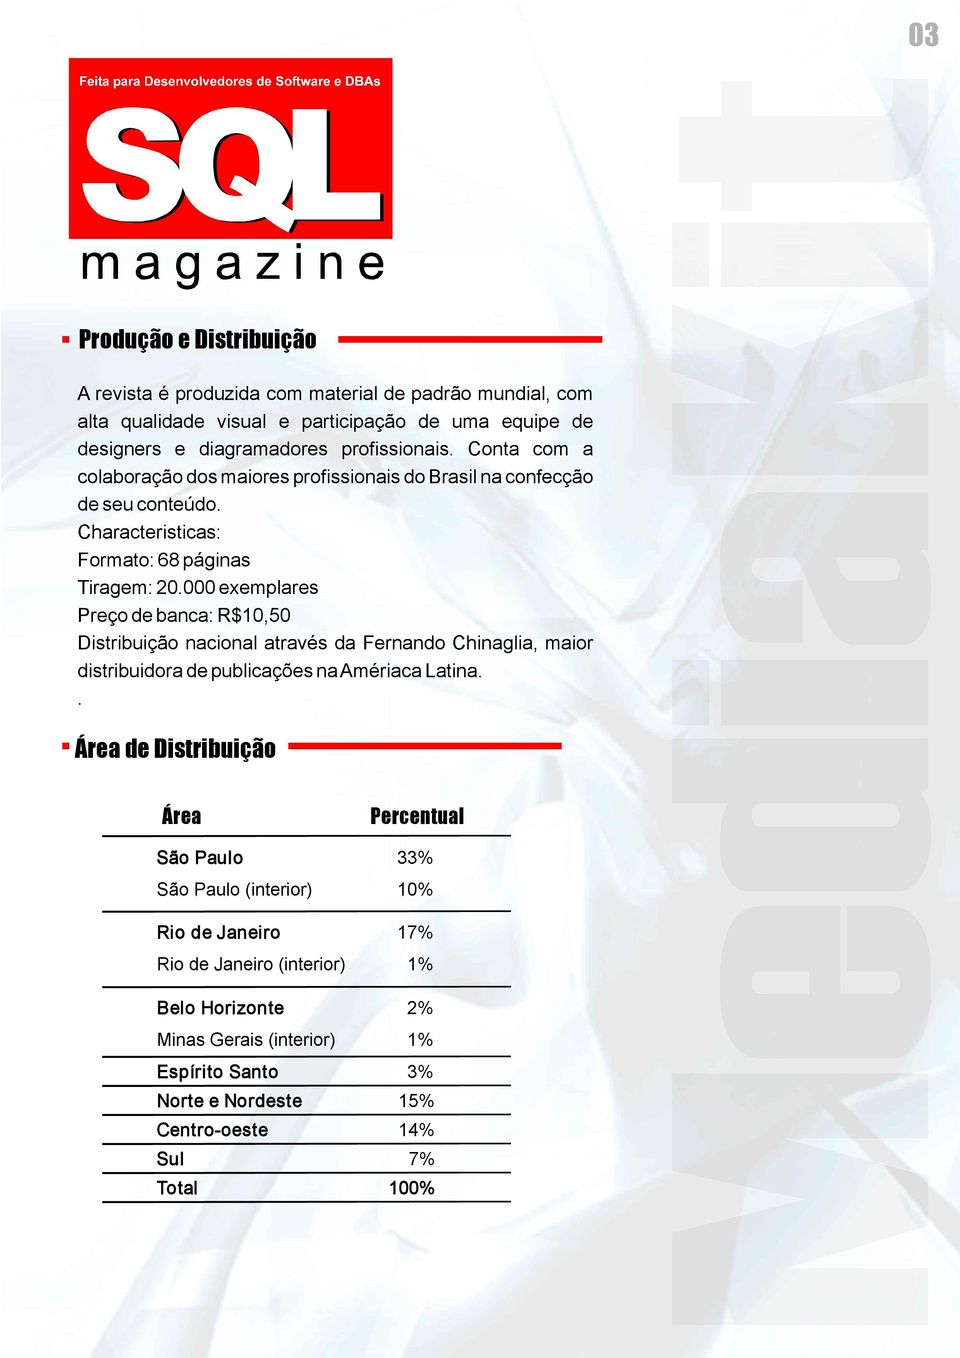 000 exemplares Preço de banca: R$10,50 Distribuição nacional através da Fernando Chinaglia, maior distribuidora de publicações naamériaca Latina.